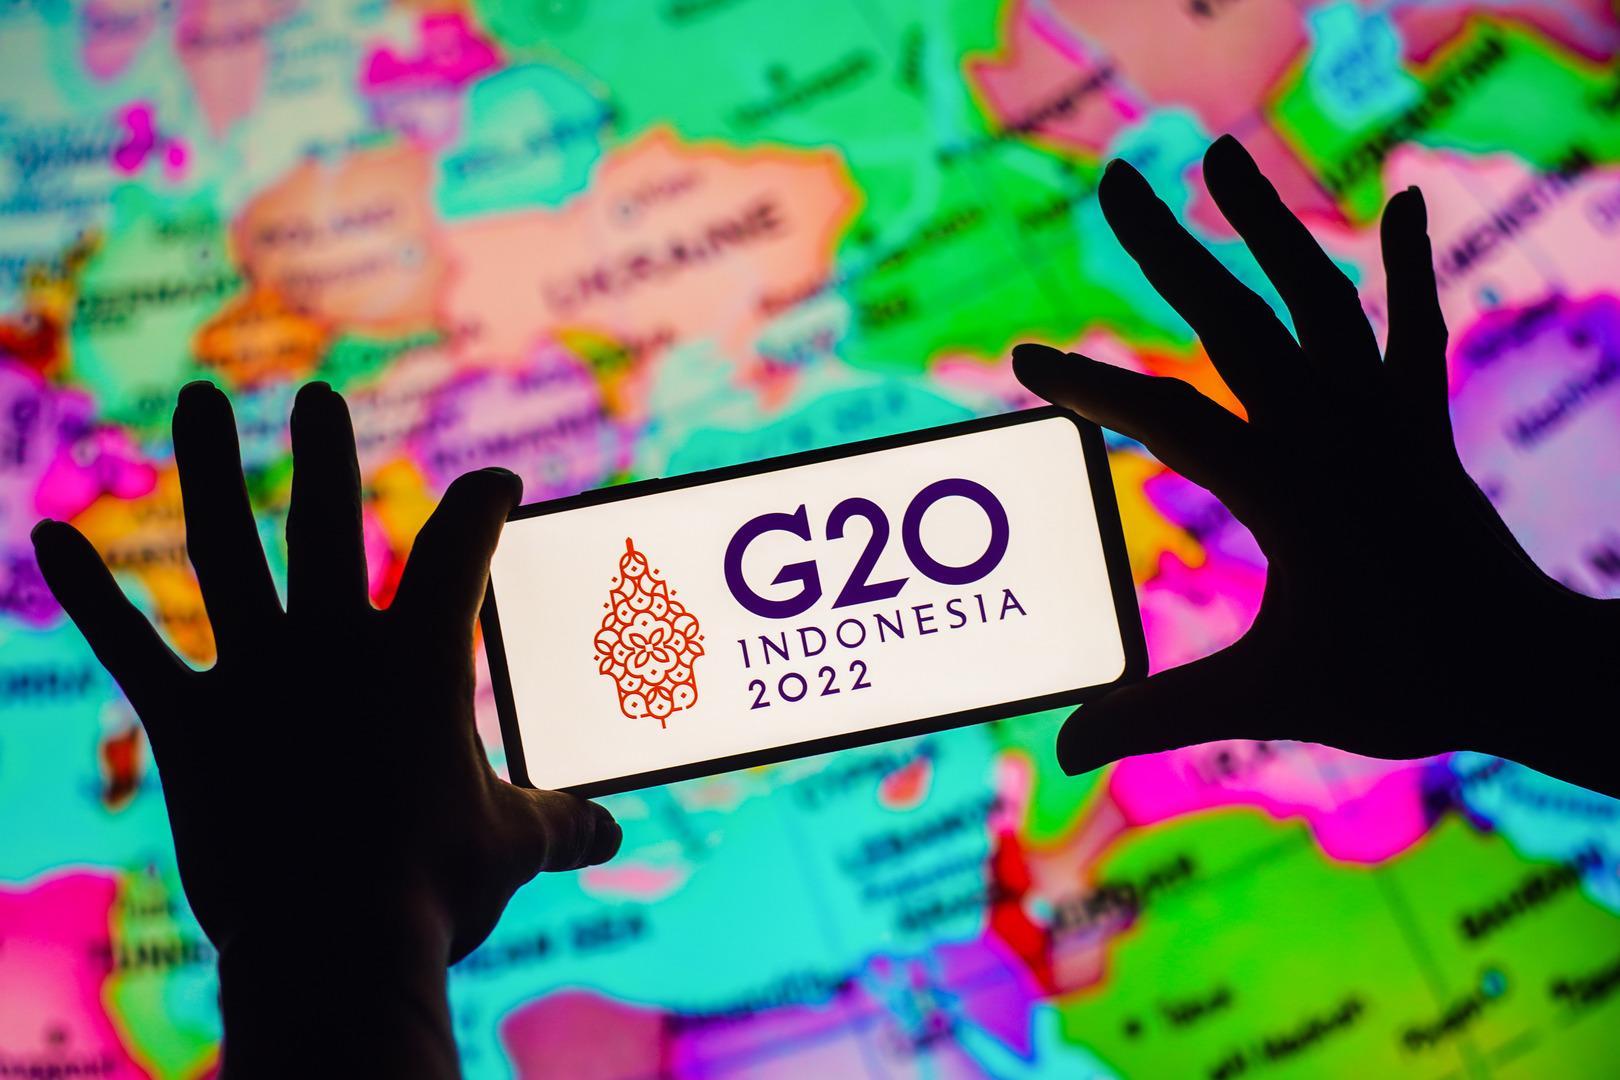 في قمة G20 بإندونيسيا.. روسيا ستؤكد استعدادها لتوفير الغذاء والطاقة لدول العالم